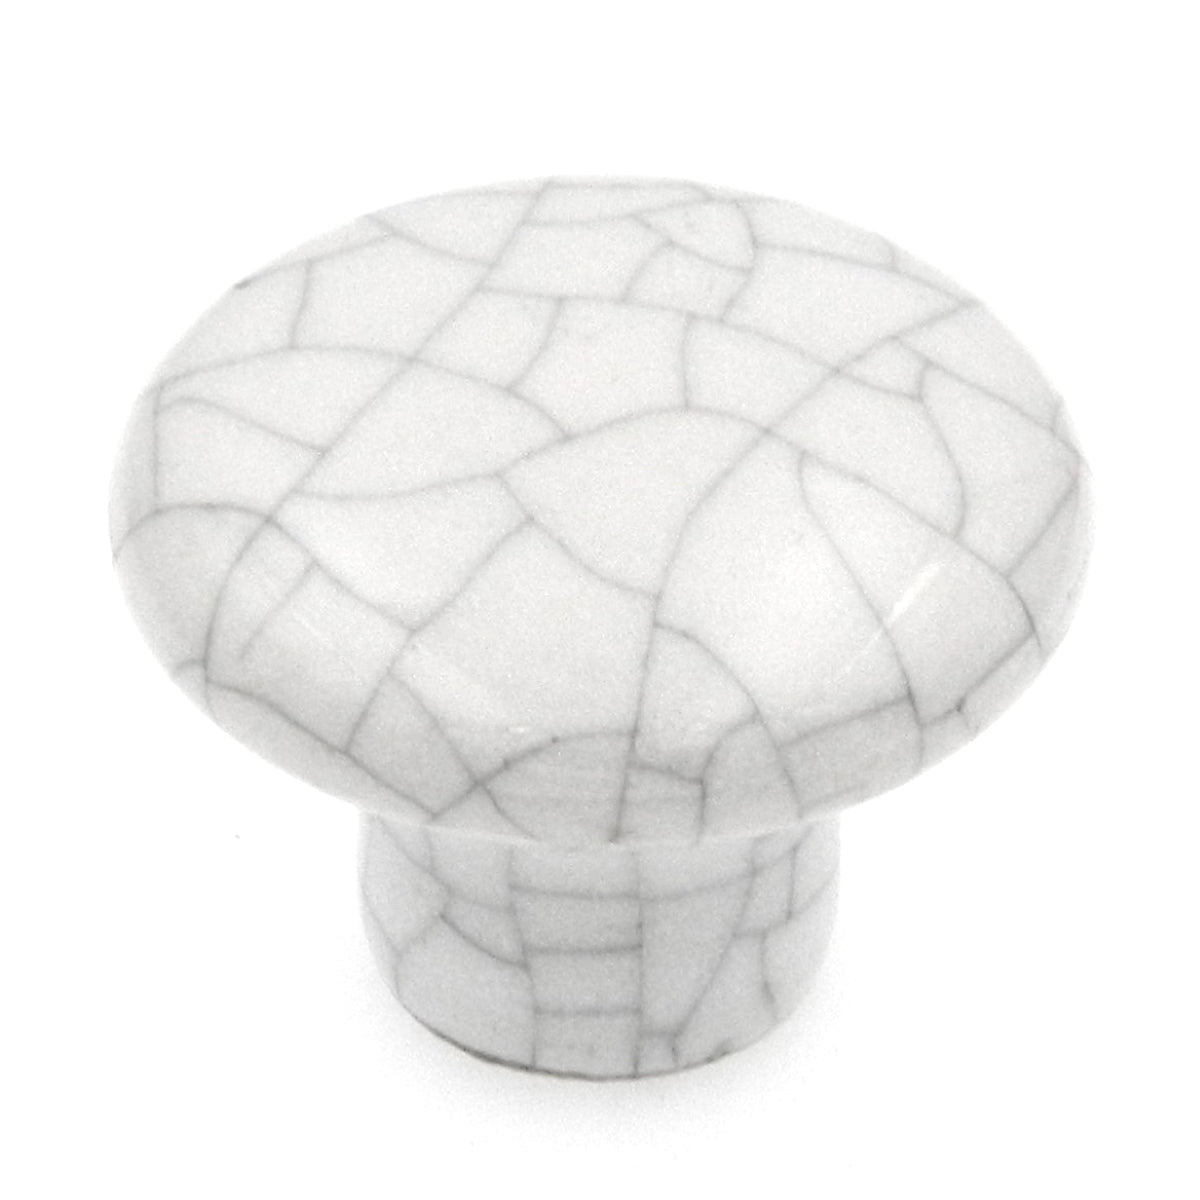 Paquete de 25 perillas de gabinete de cerámica craqueladas blancas Kraftmaid de 1 1/4" 510-9429001